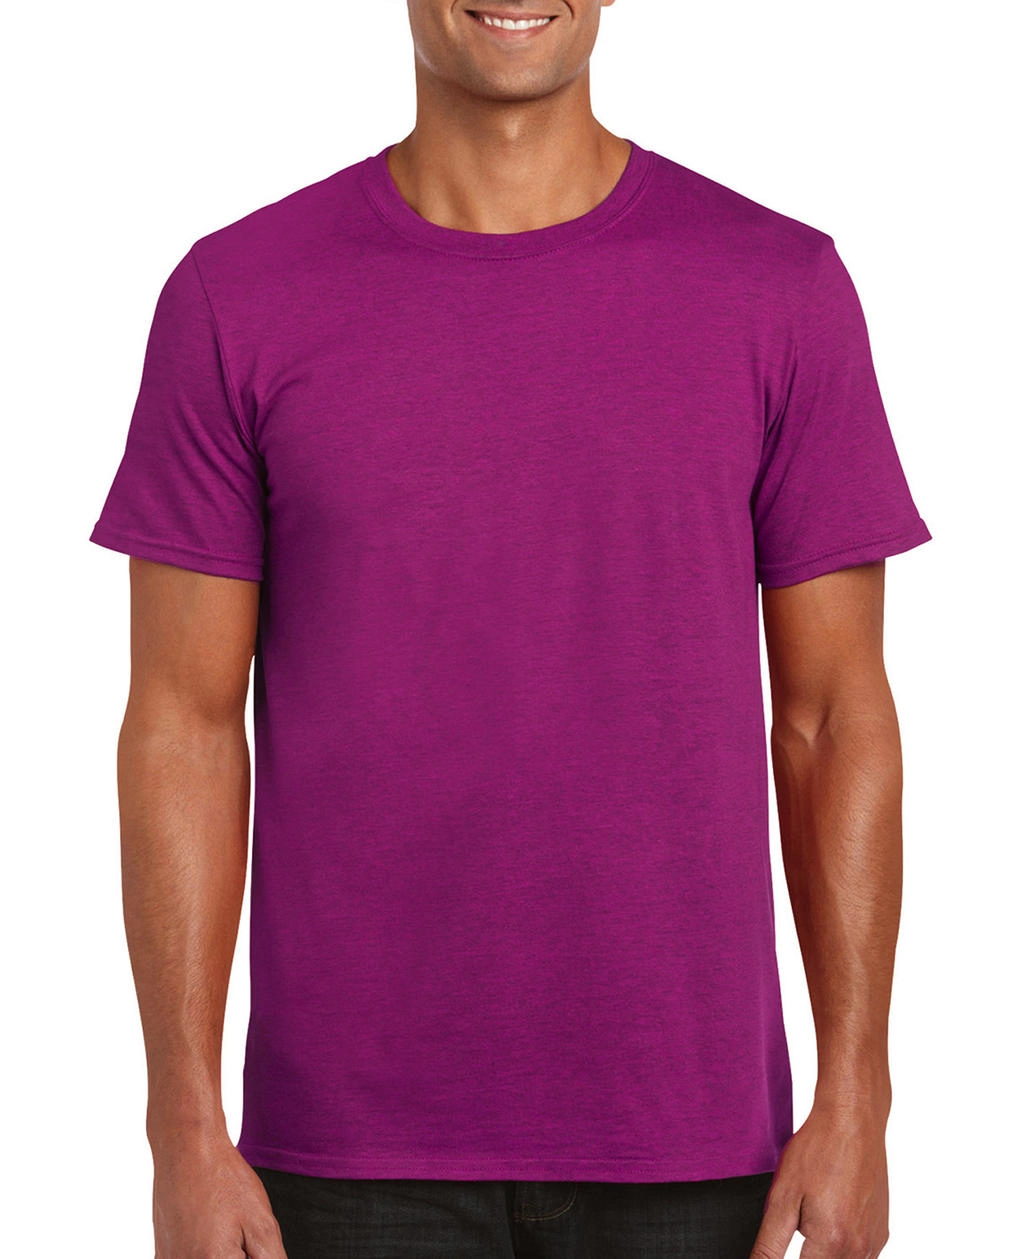 Softstyle® Ring Spun T-Shirt zum Besticken und Bedrucken in der Farbe Antique Heliconia mit Ihren Logo, Schriftzug oder Motiv.